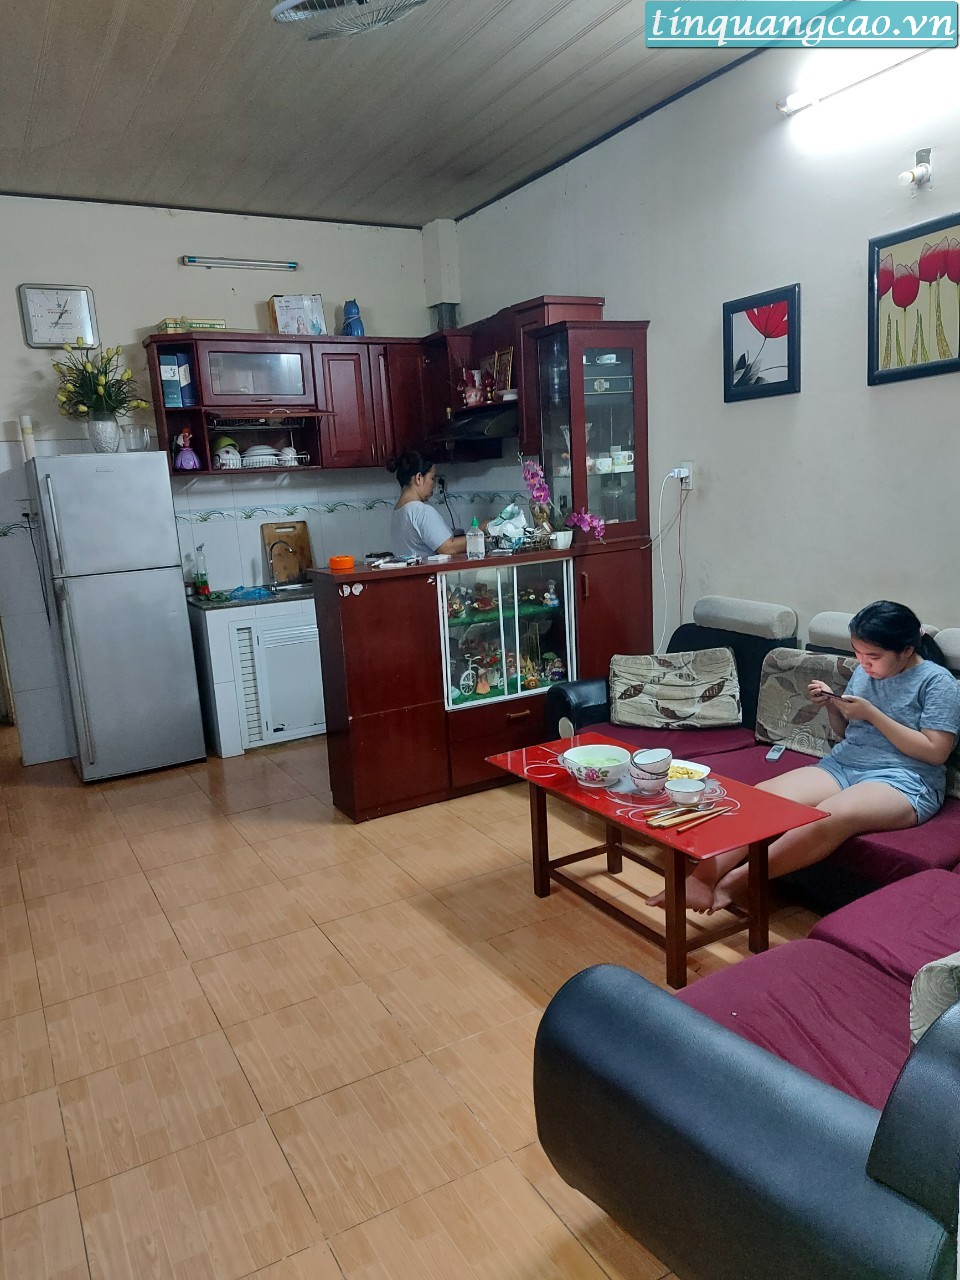 Chính chủ bán nhà kiệt 266 Hoàng Diệu, phường Bình Hiên, quận Hải Châu